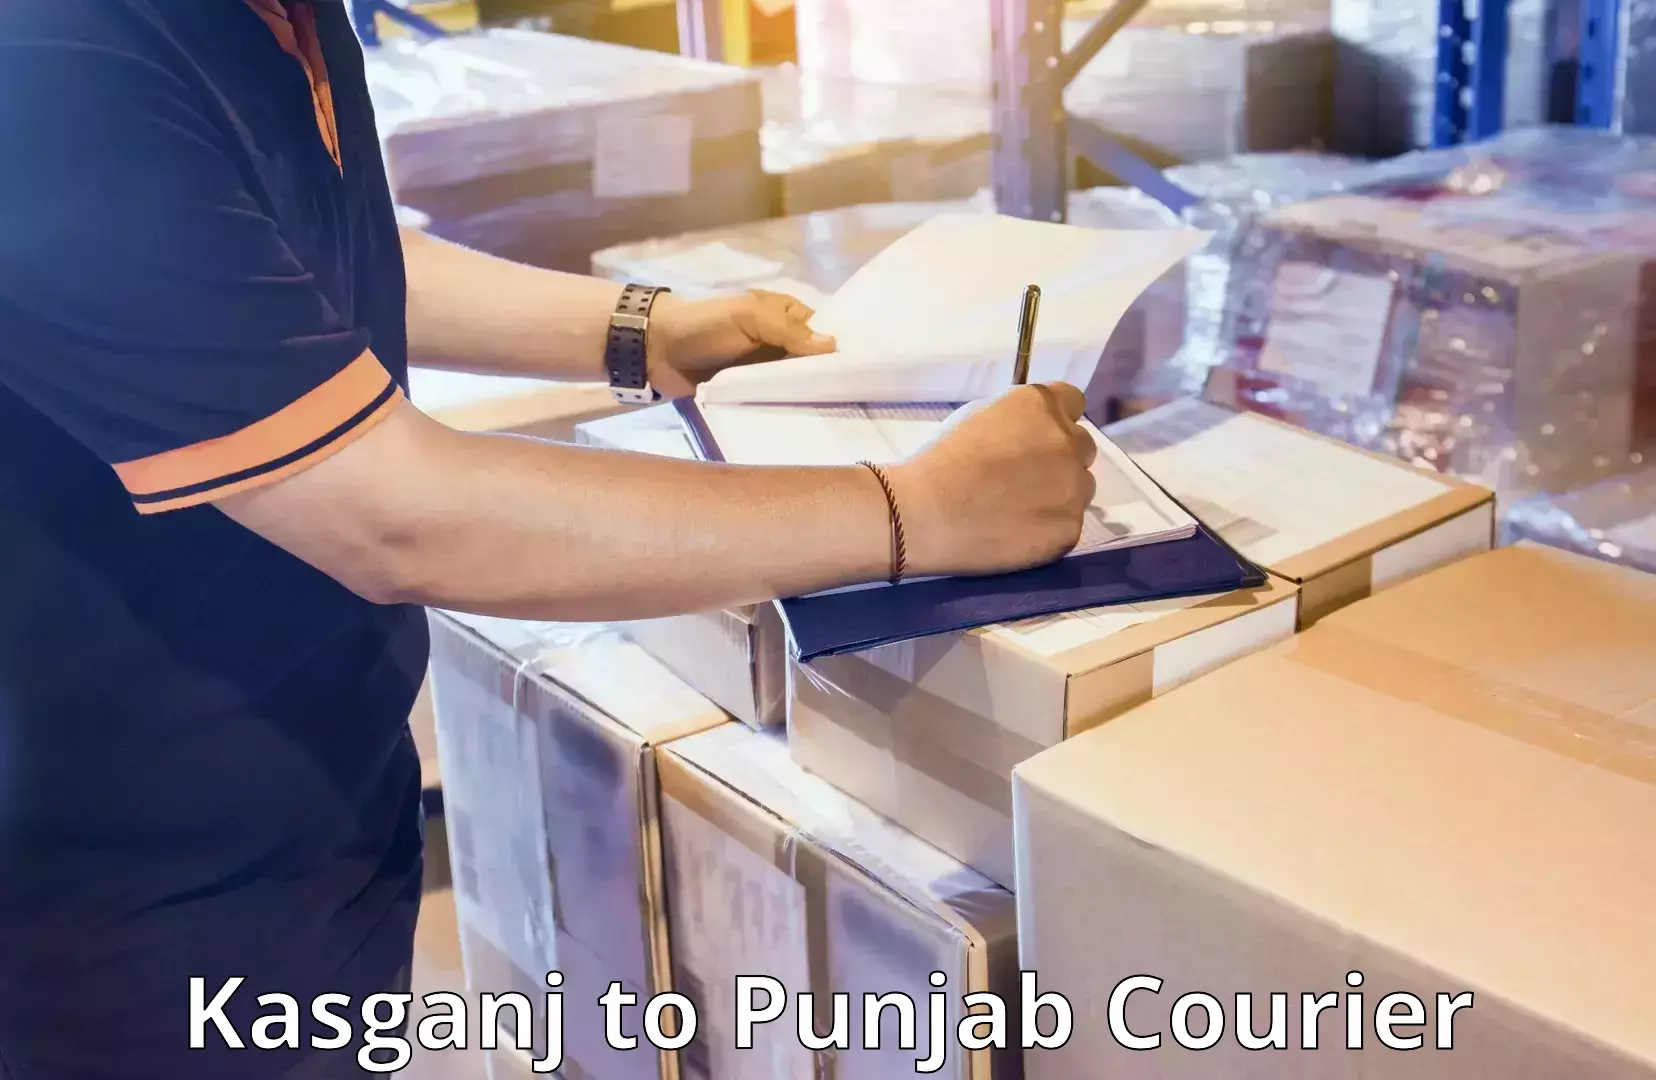 Baggage transport technology in Kasganj to Punjab